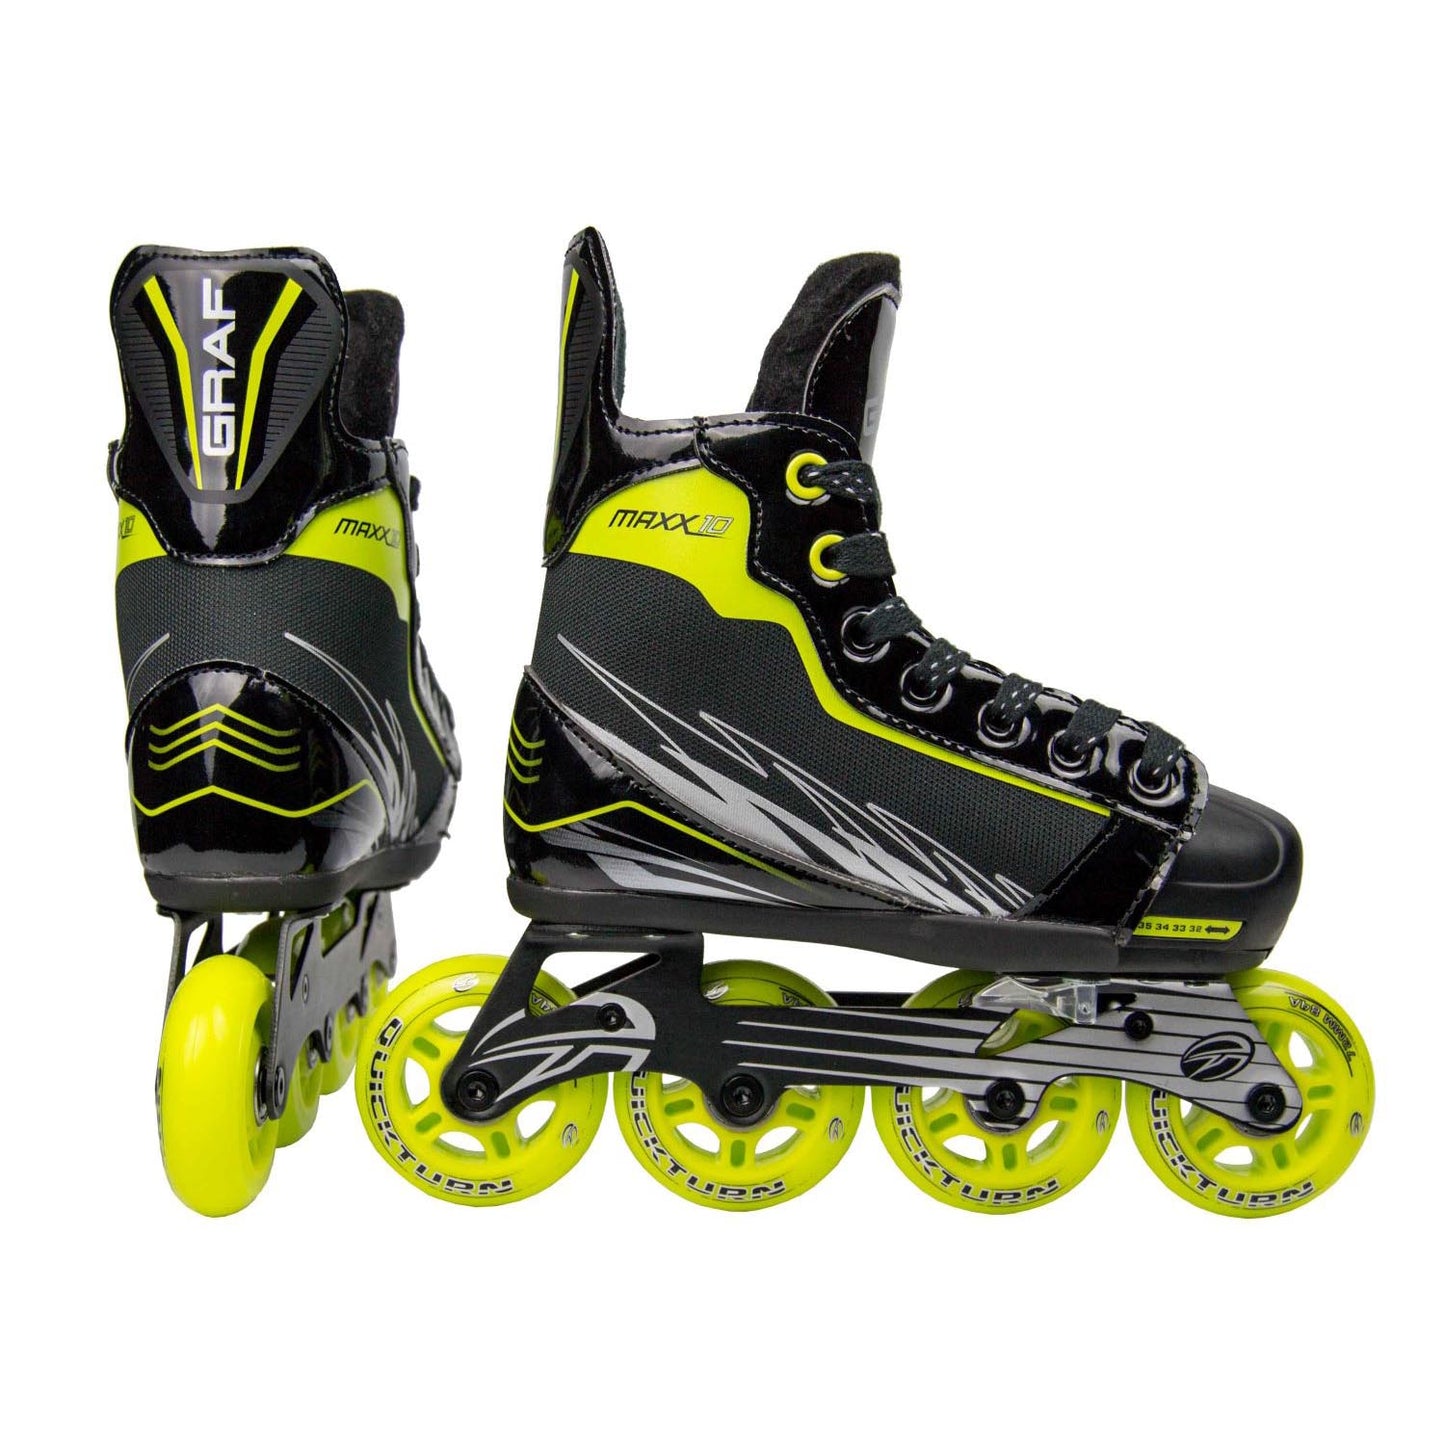 GRAF MAXX 10 Junior Adjustable Roller Skates